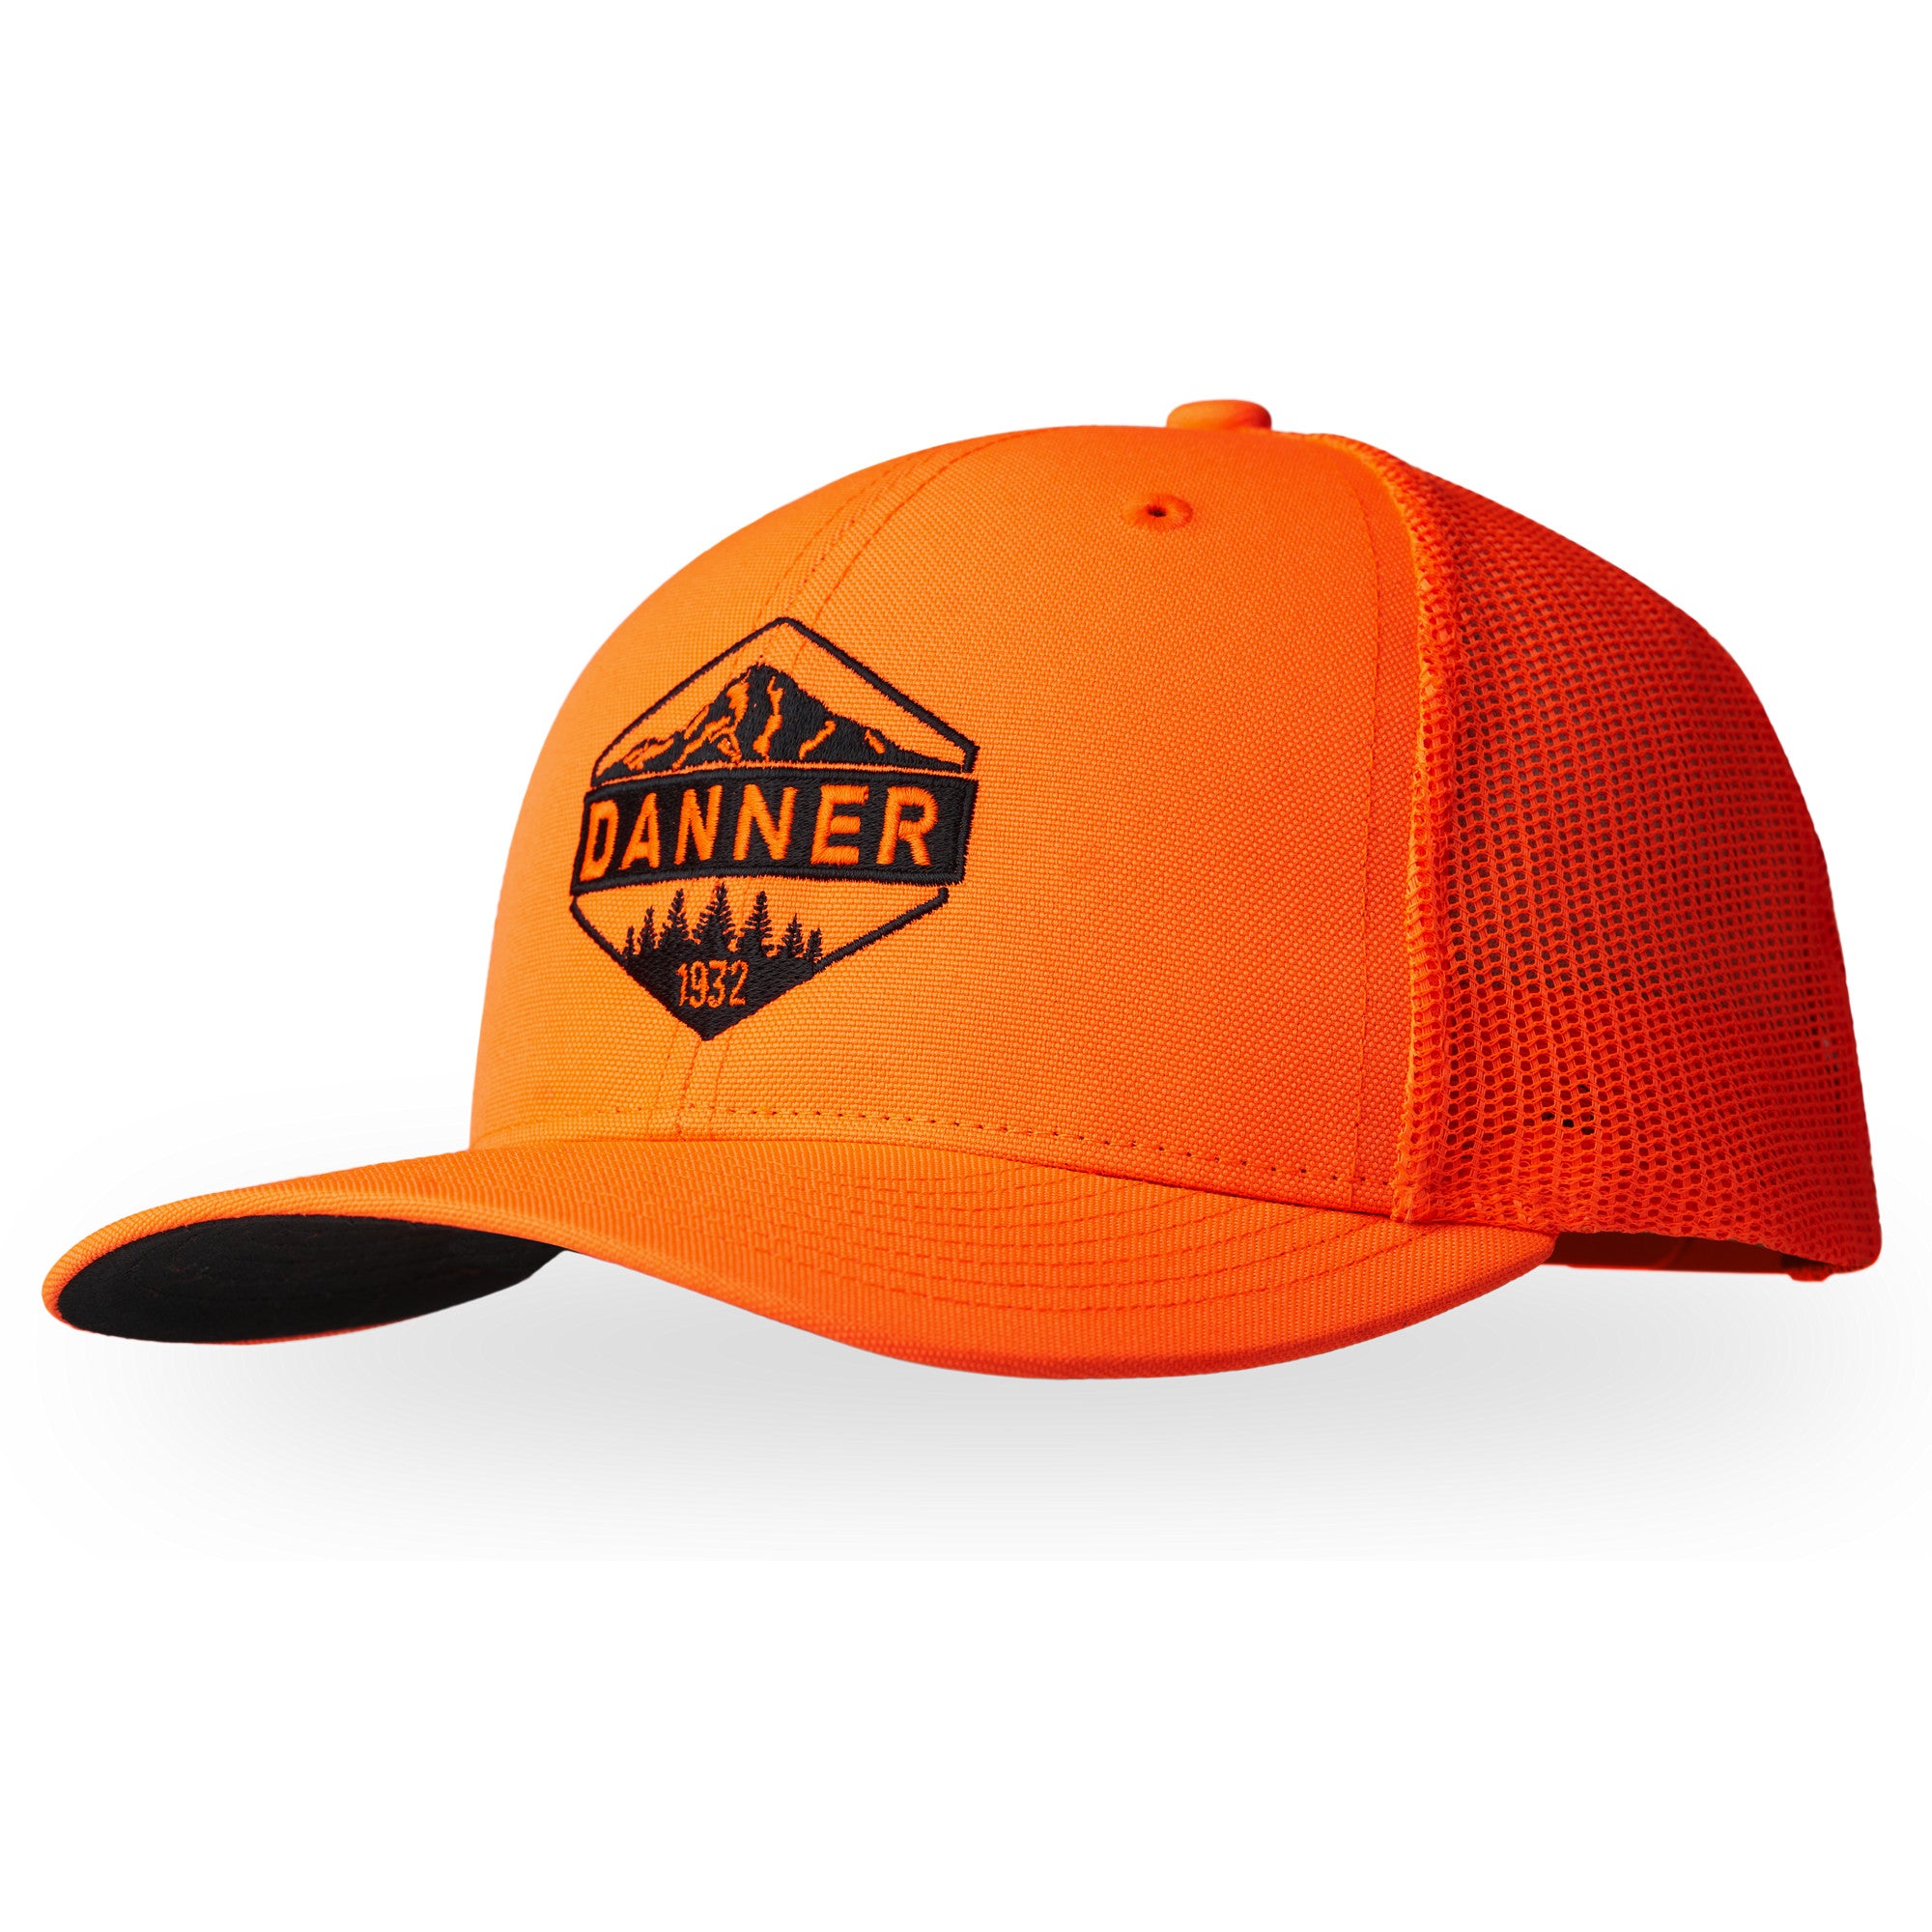 DannerBlaze Orange Trucker Hat - Work World - Workwear, Work Boots, Safety Gear